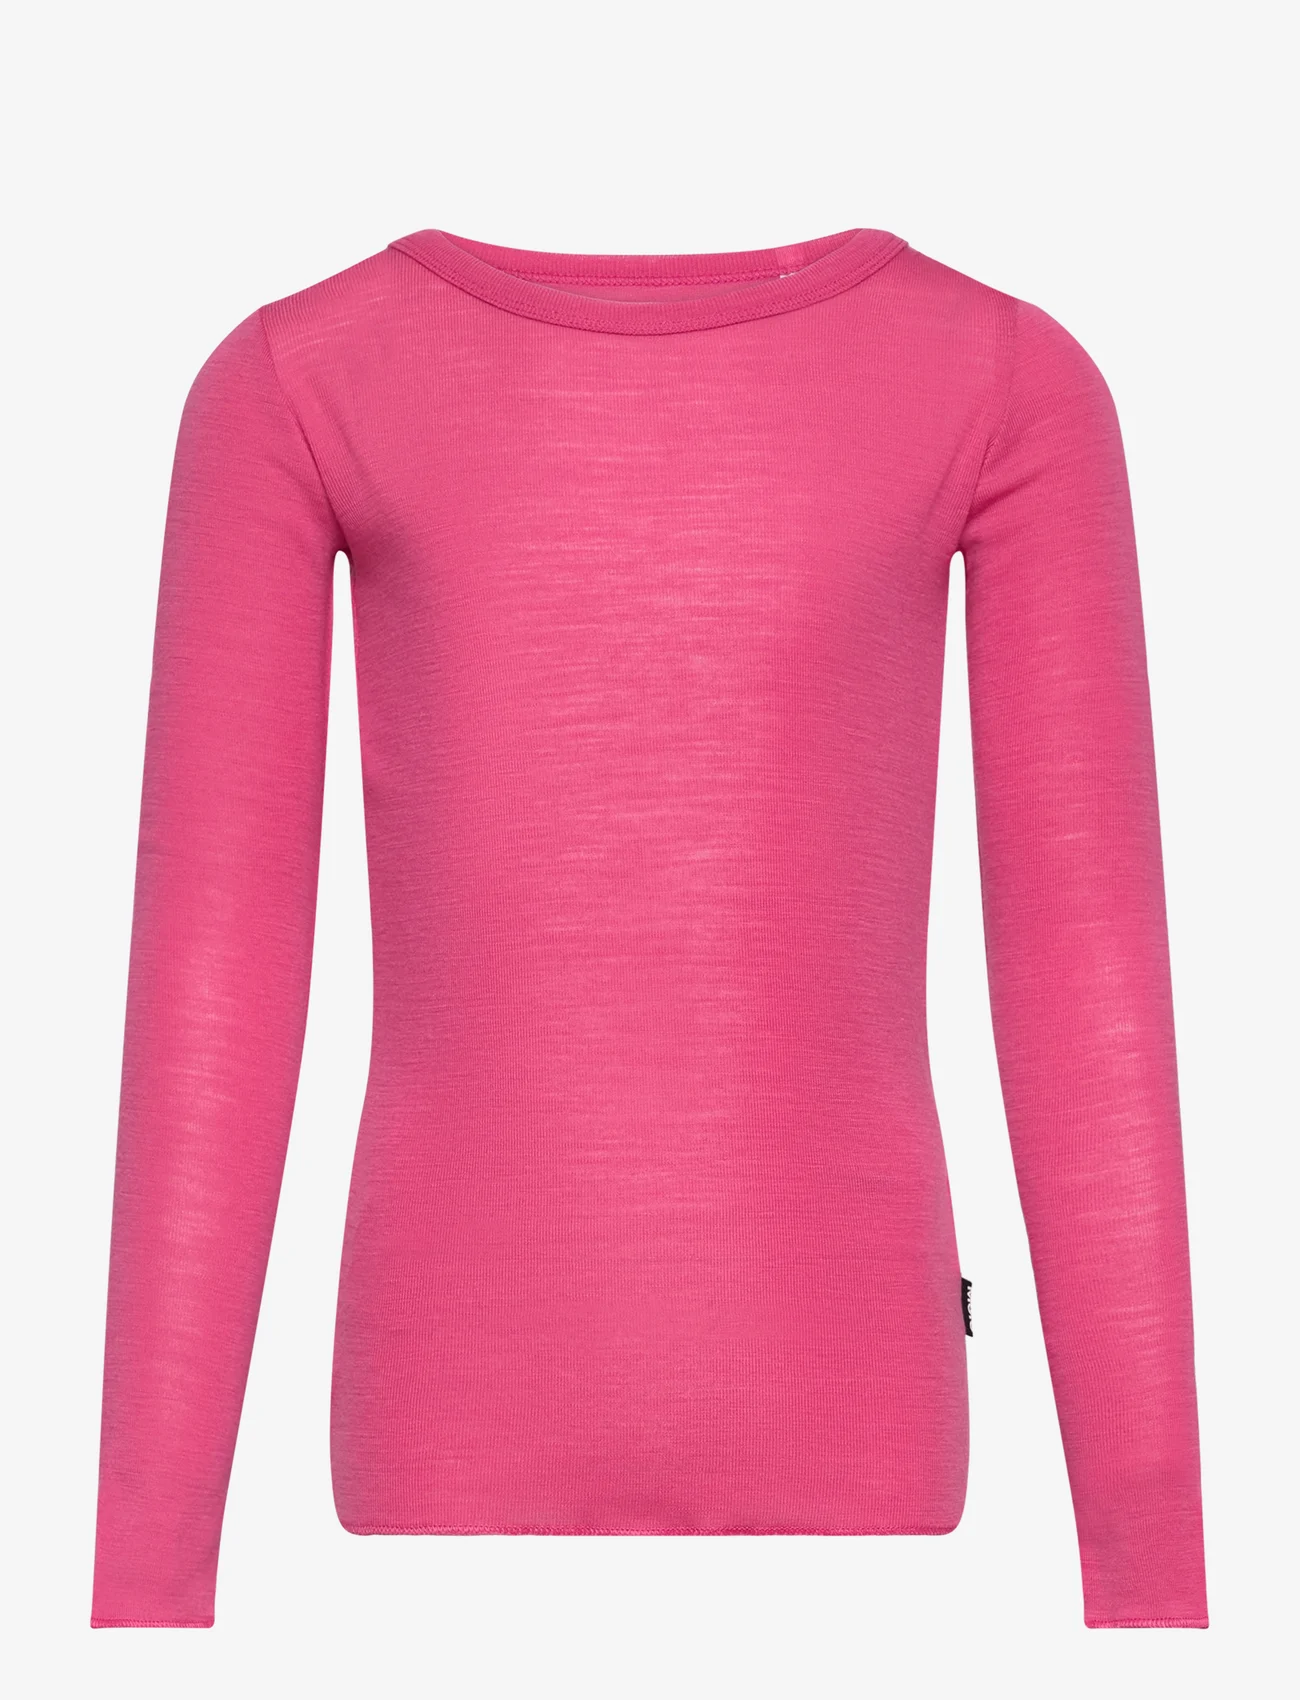 Molo - Rihanna Wool - långärmade t-shirts - pink magic - 0